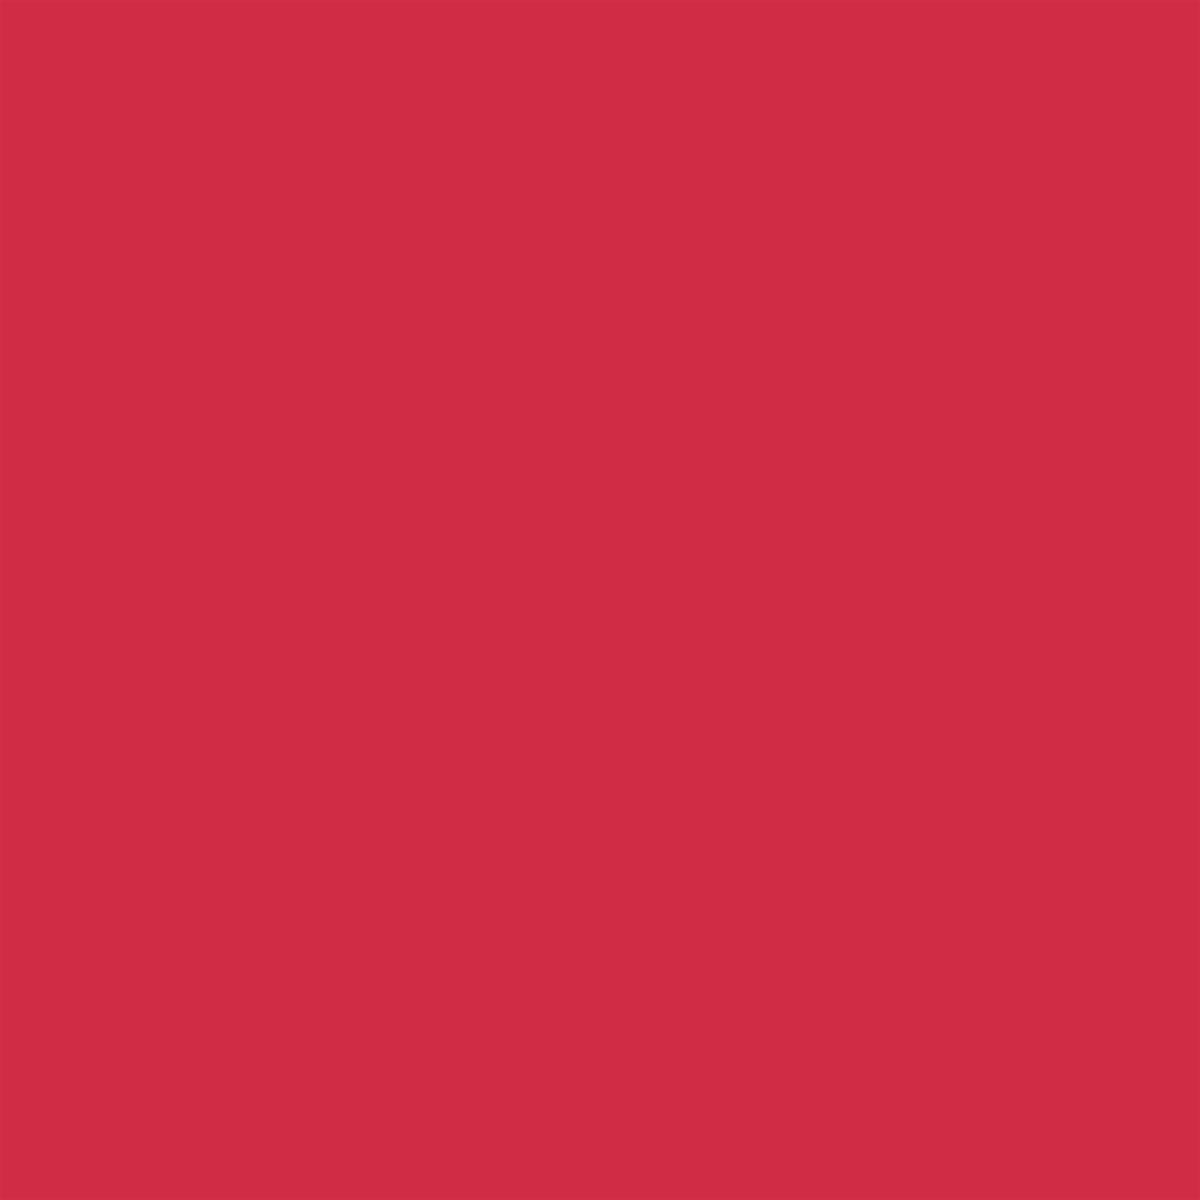 Winsor & Newton - Promarker Brush - Berry Red - BrushMarker